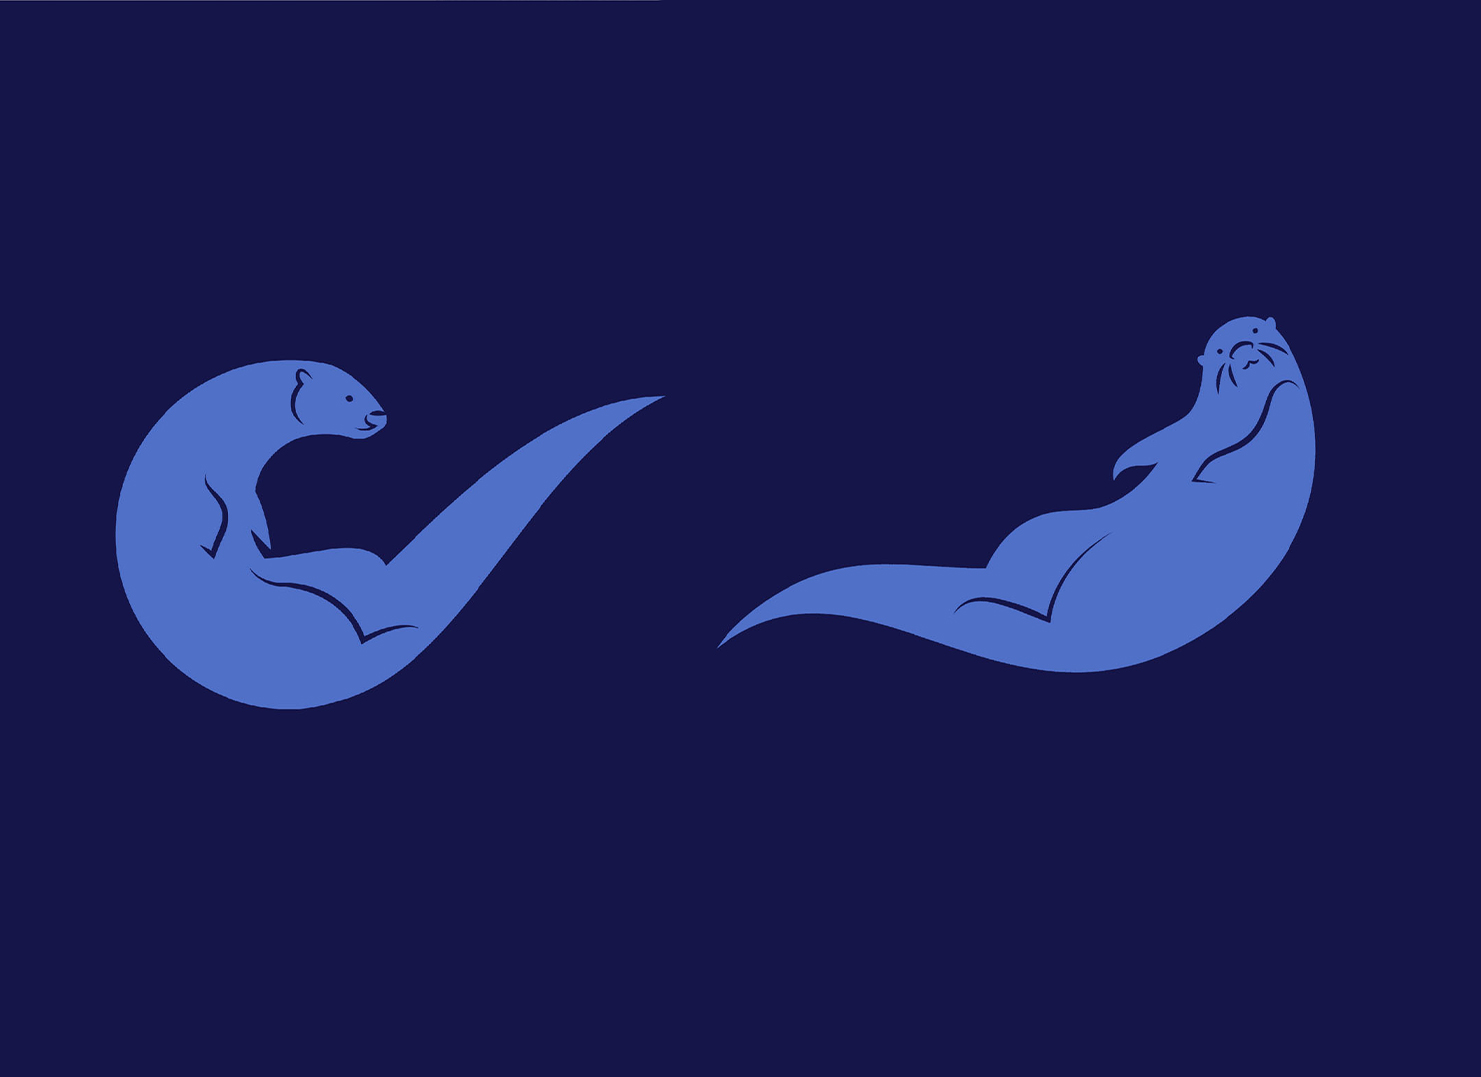 Blue sea otter illustrations.